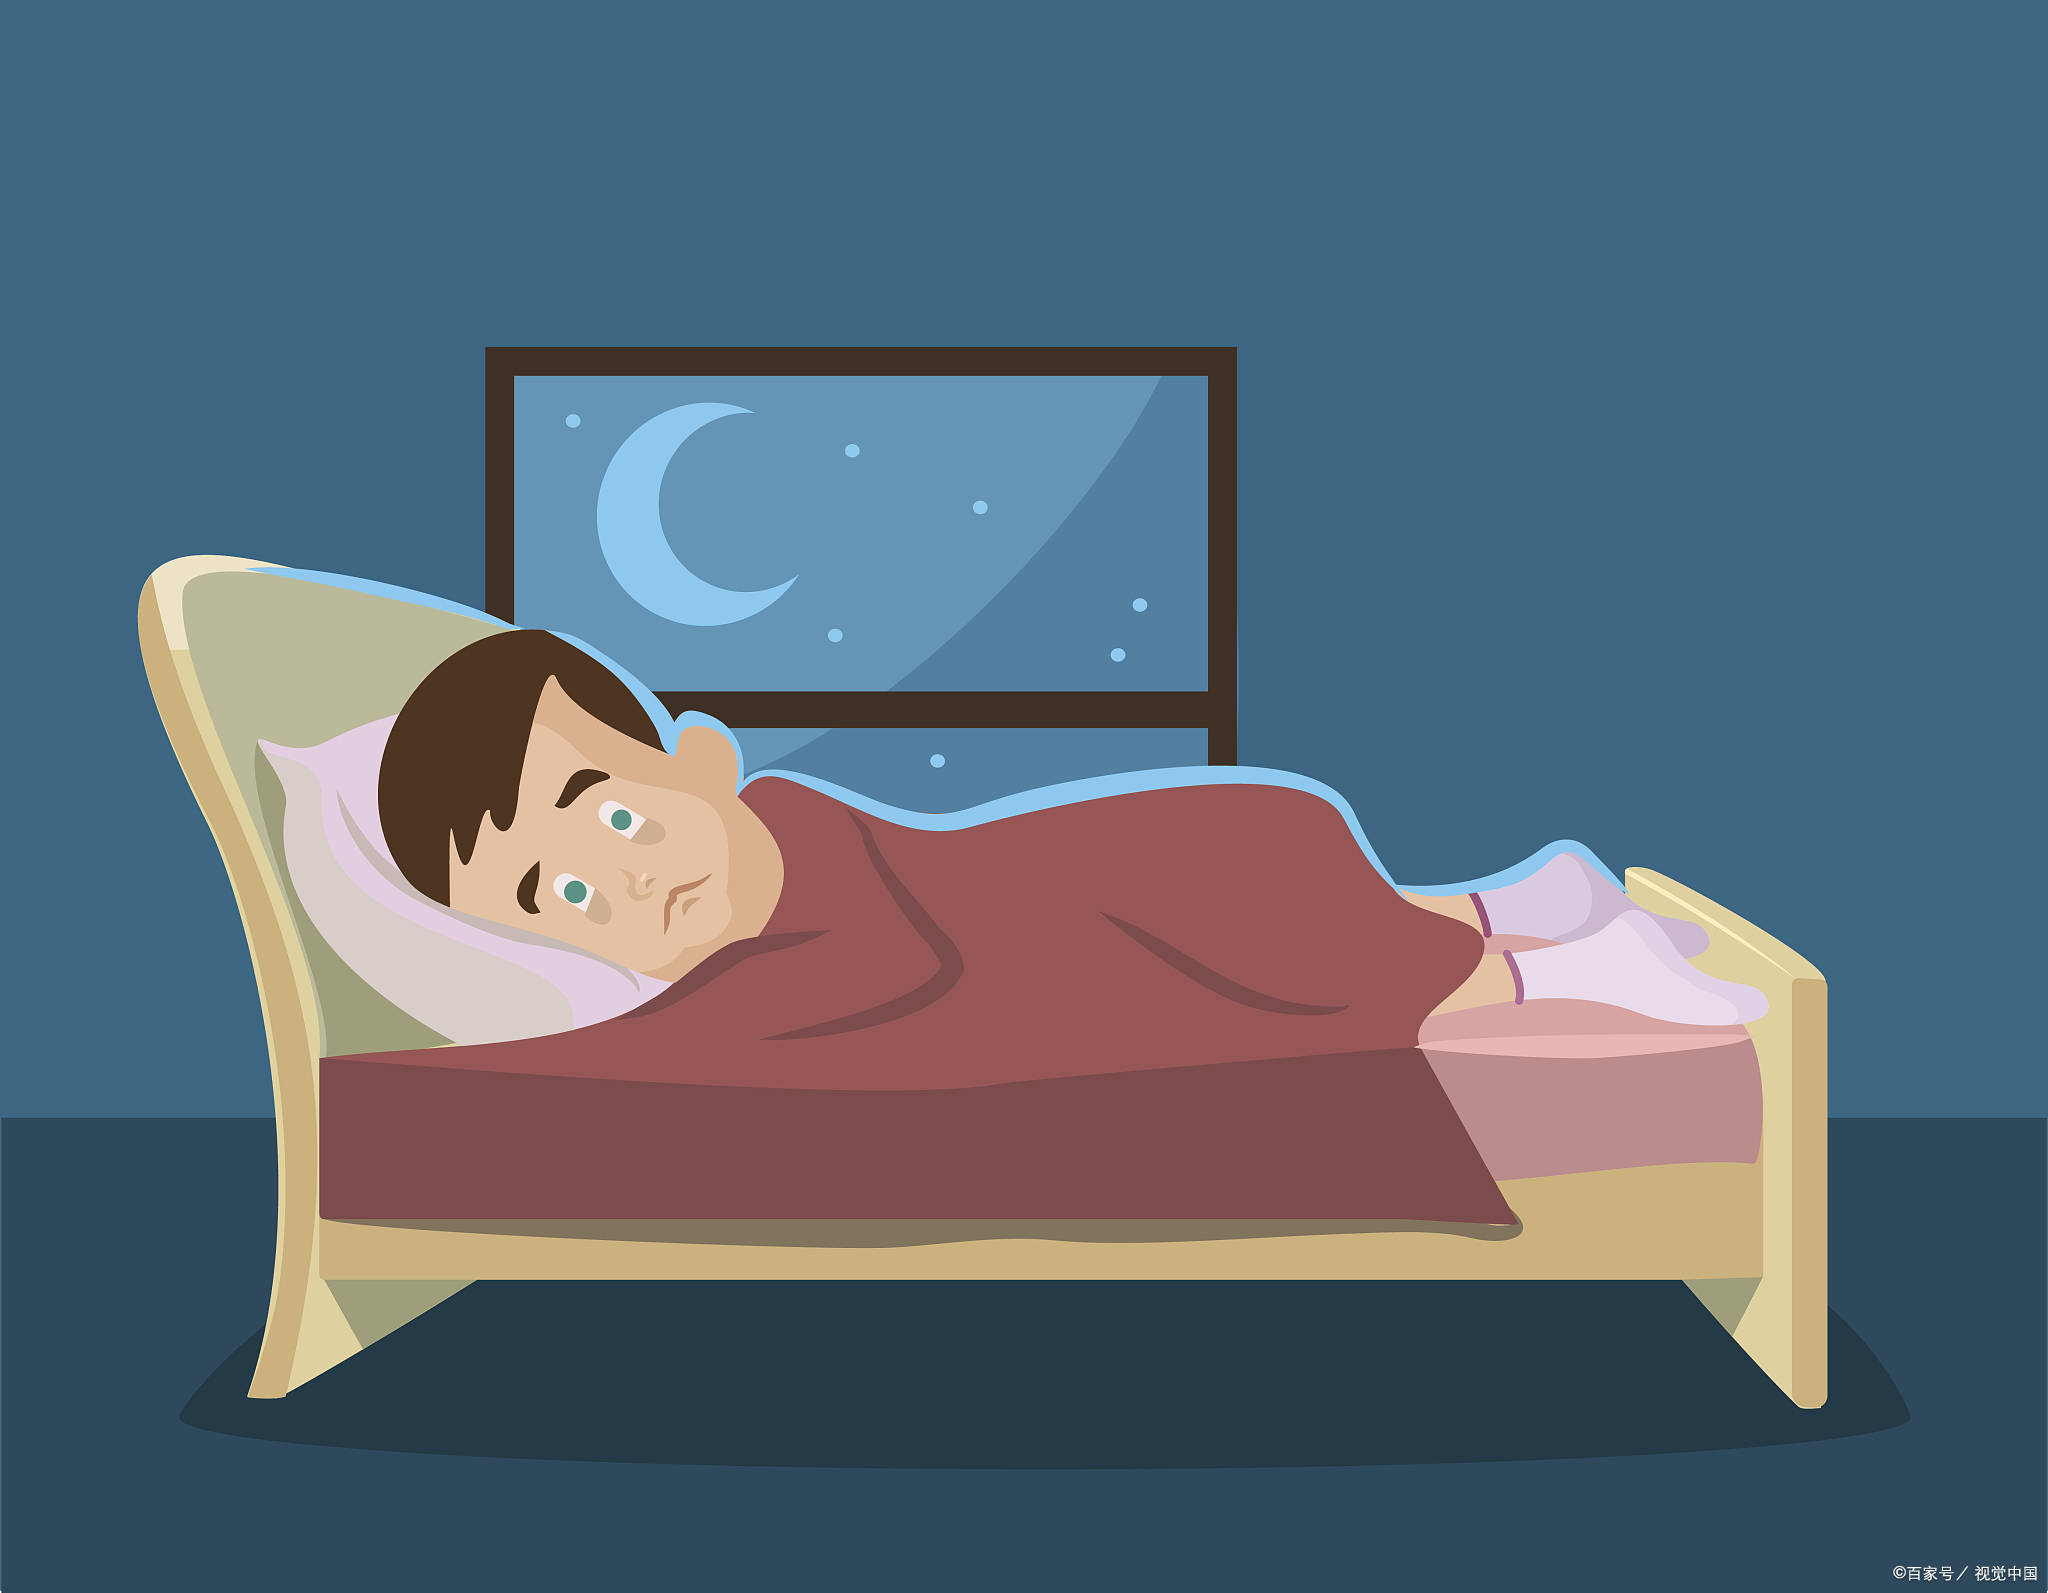 失眠多梦易惊醒,究竟是何原因导致了这失眠多梦易惊醒的困境呢?